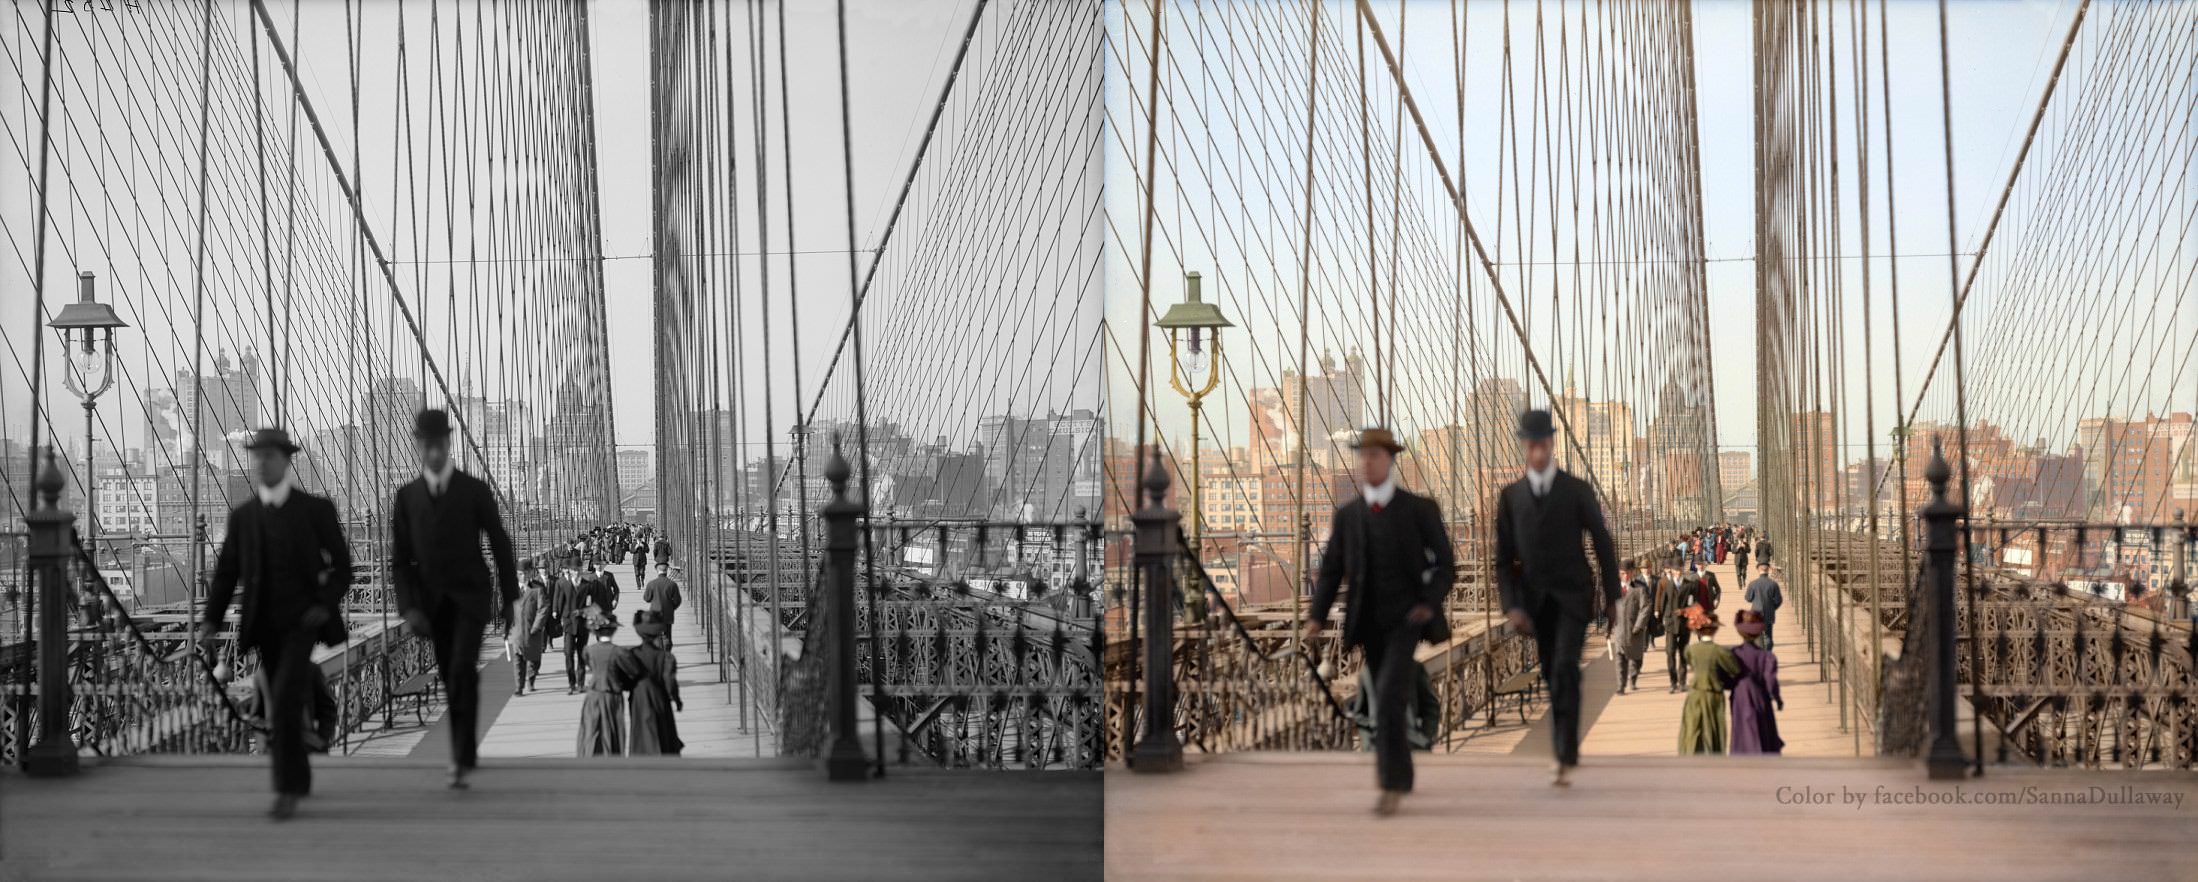 Brooklyn Bridge in NYC, US in 1904.